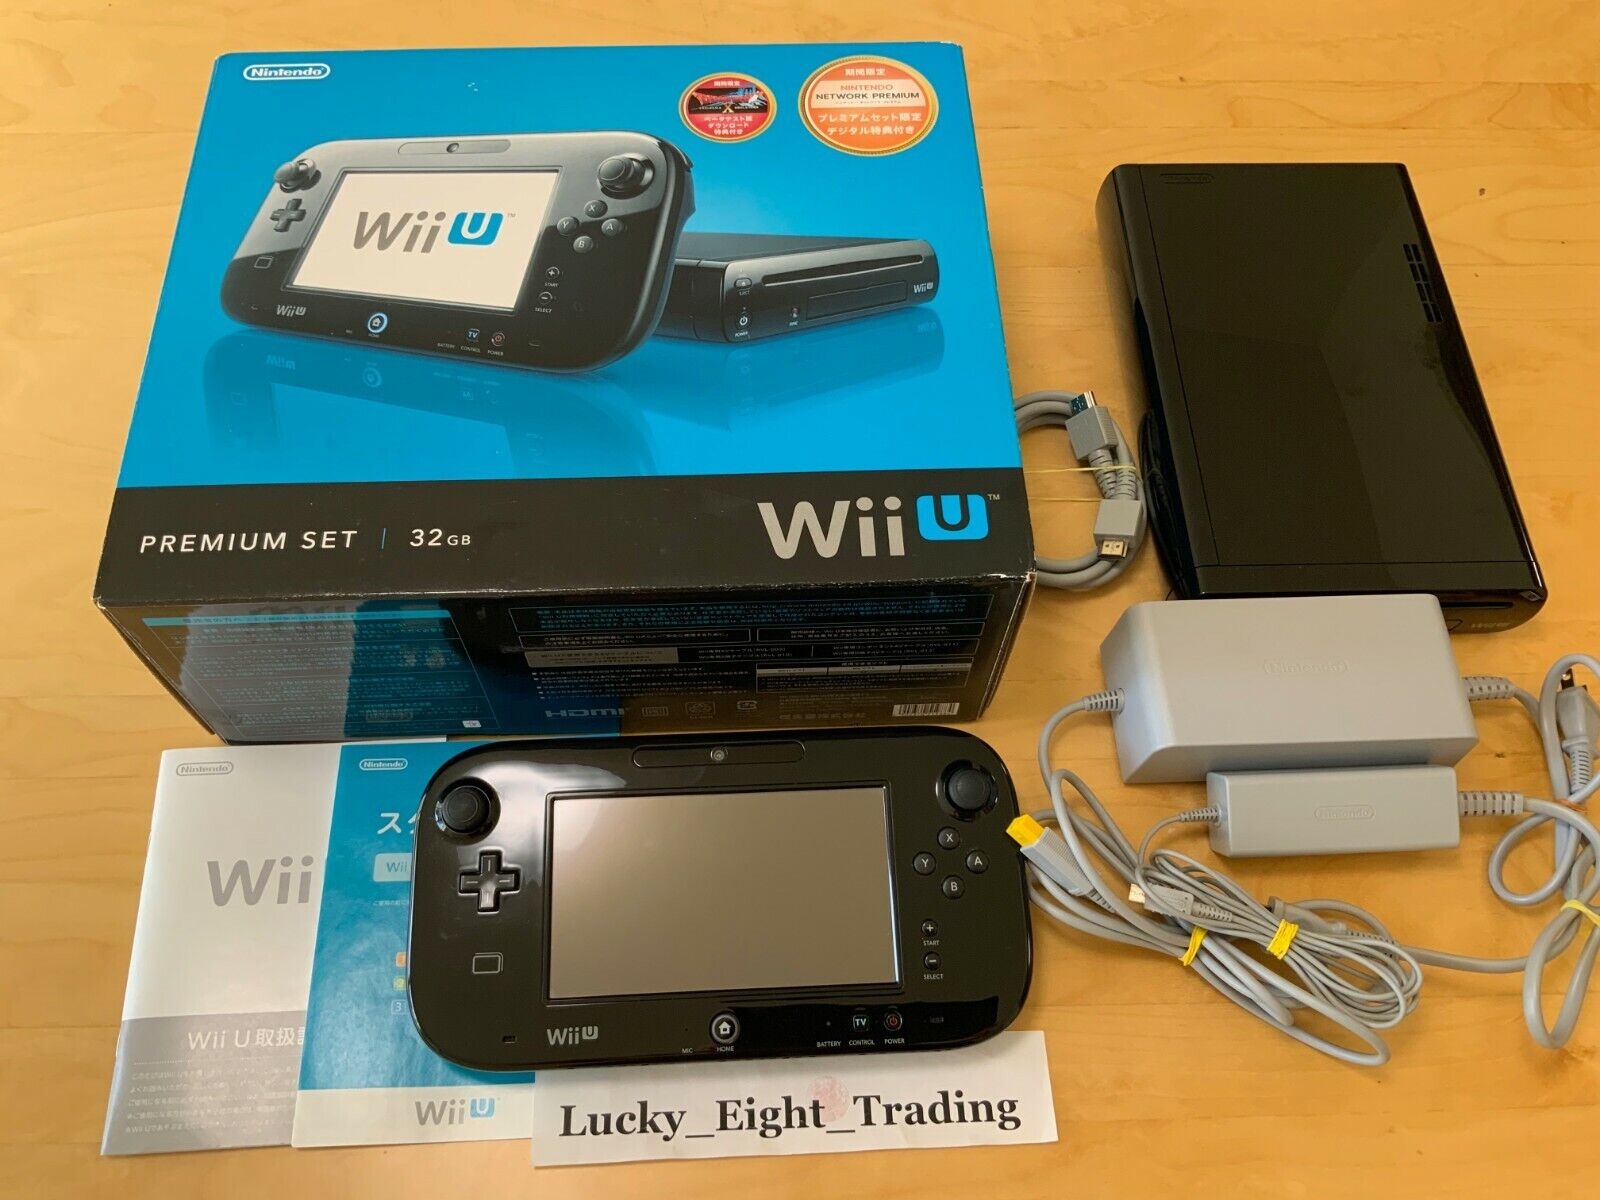 Vervuild Je zal beter worden Gelijkenis Nintendo Wii U Black Premium 32GB Box Console KURO [BX] | eBay